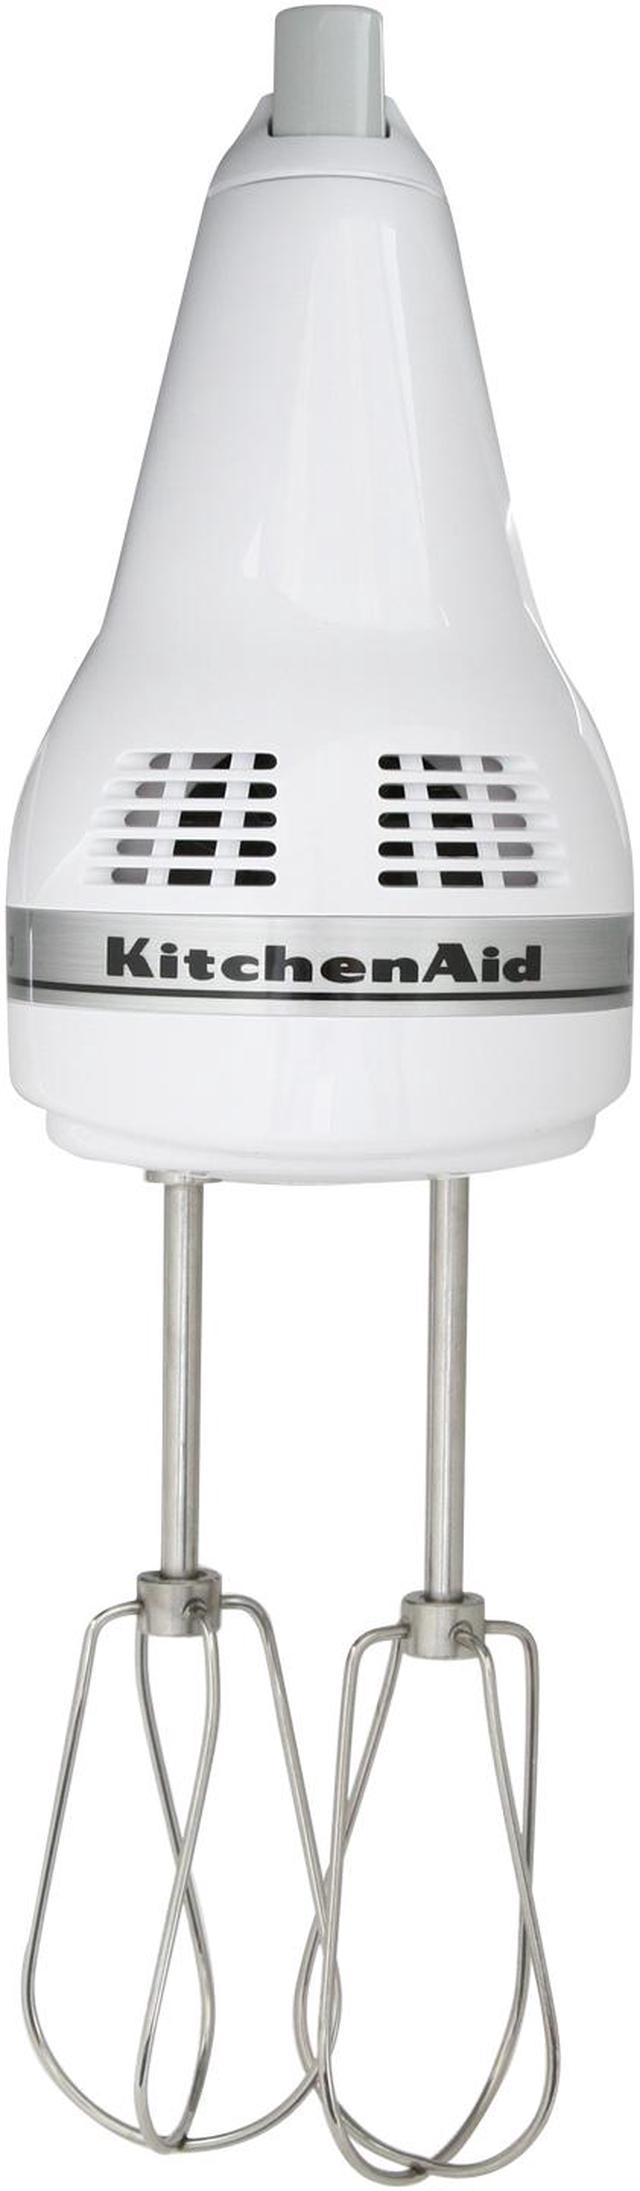 KitchenAid 3-Speed Immersion Blender 